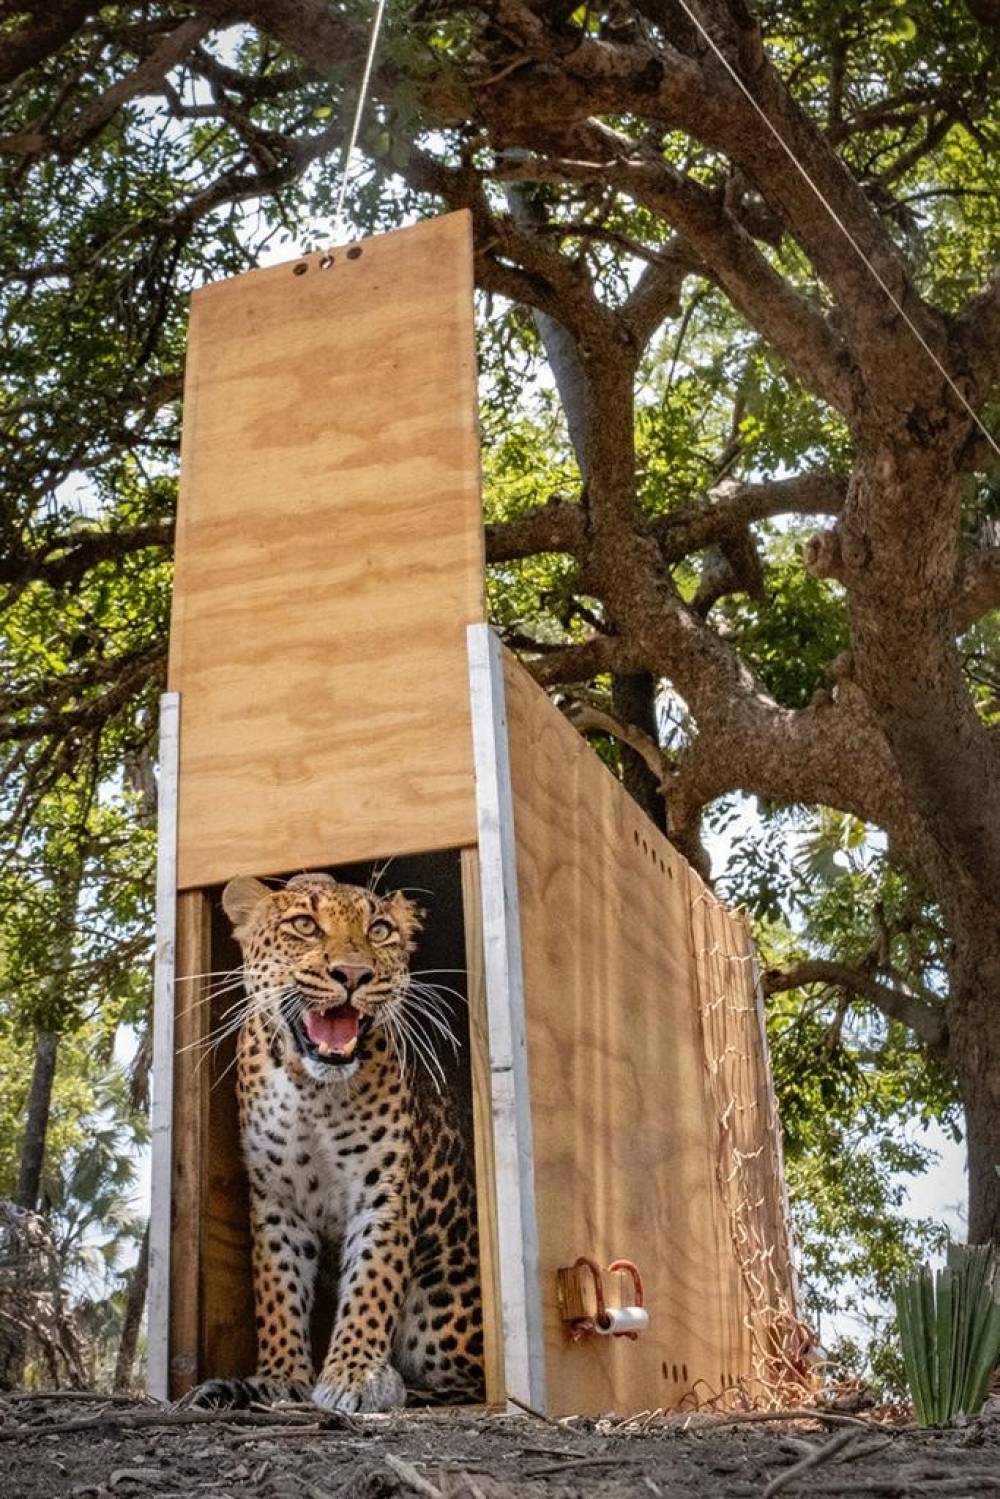 A NATURA realiza uma primeira contribuição para o programa de reintrodução do leopardo no PNG